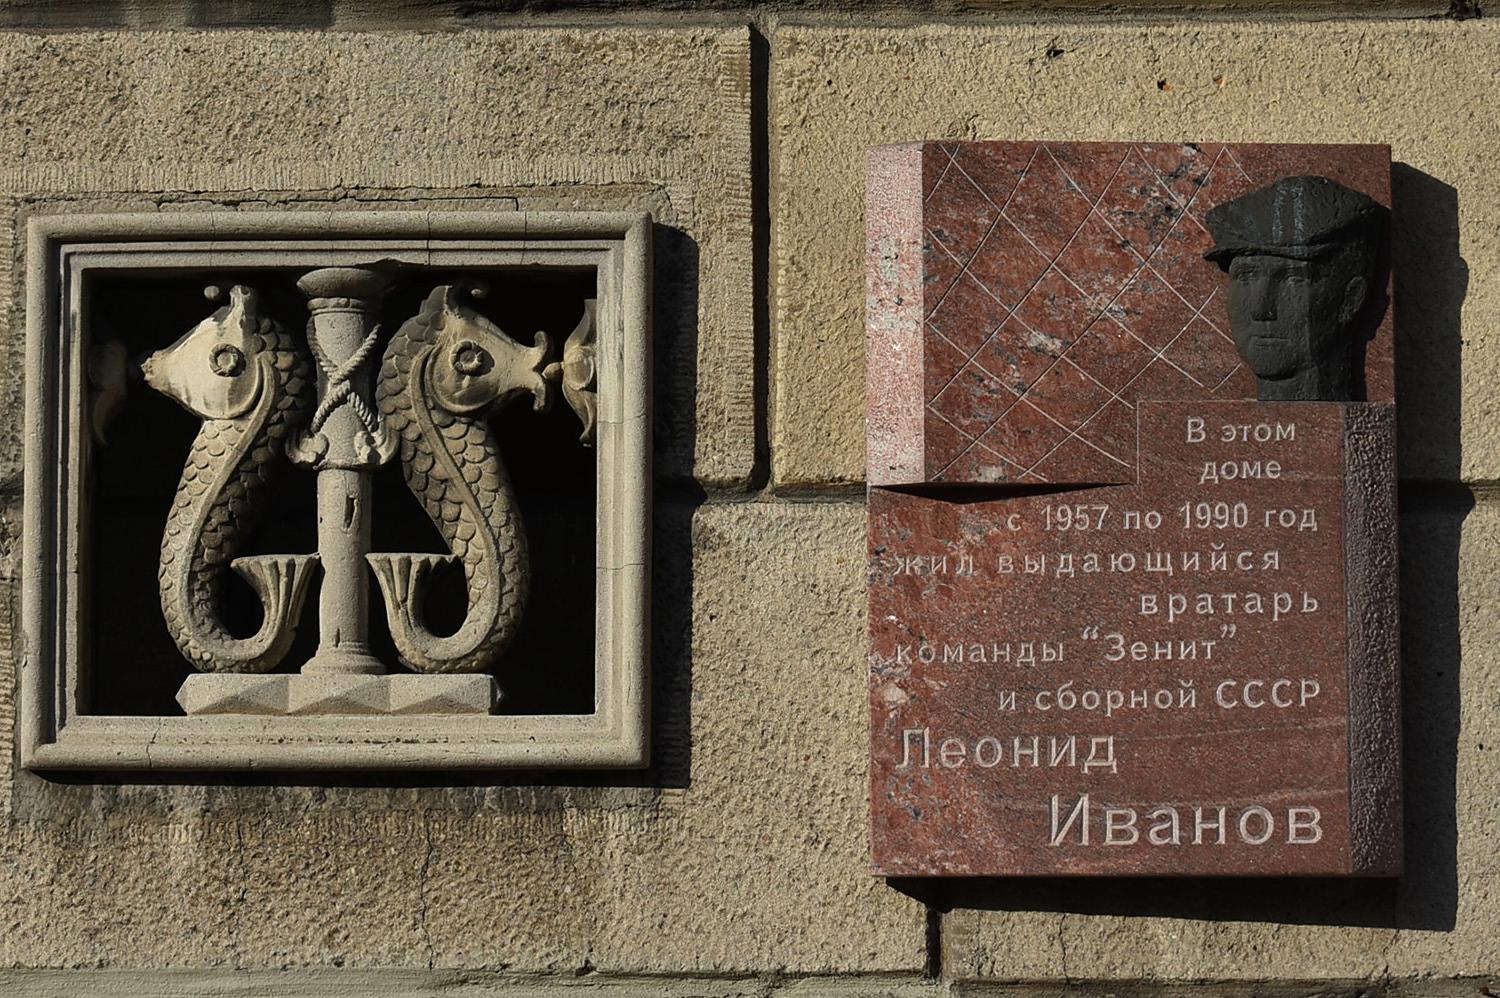 Peterburi, Кузнецовская улица, 46. Peterburi — Мемориальные доски